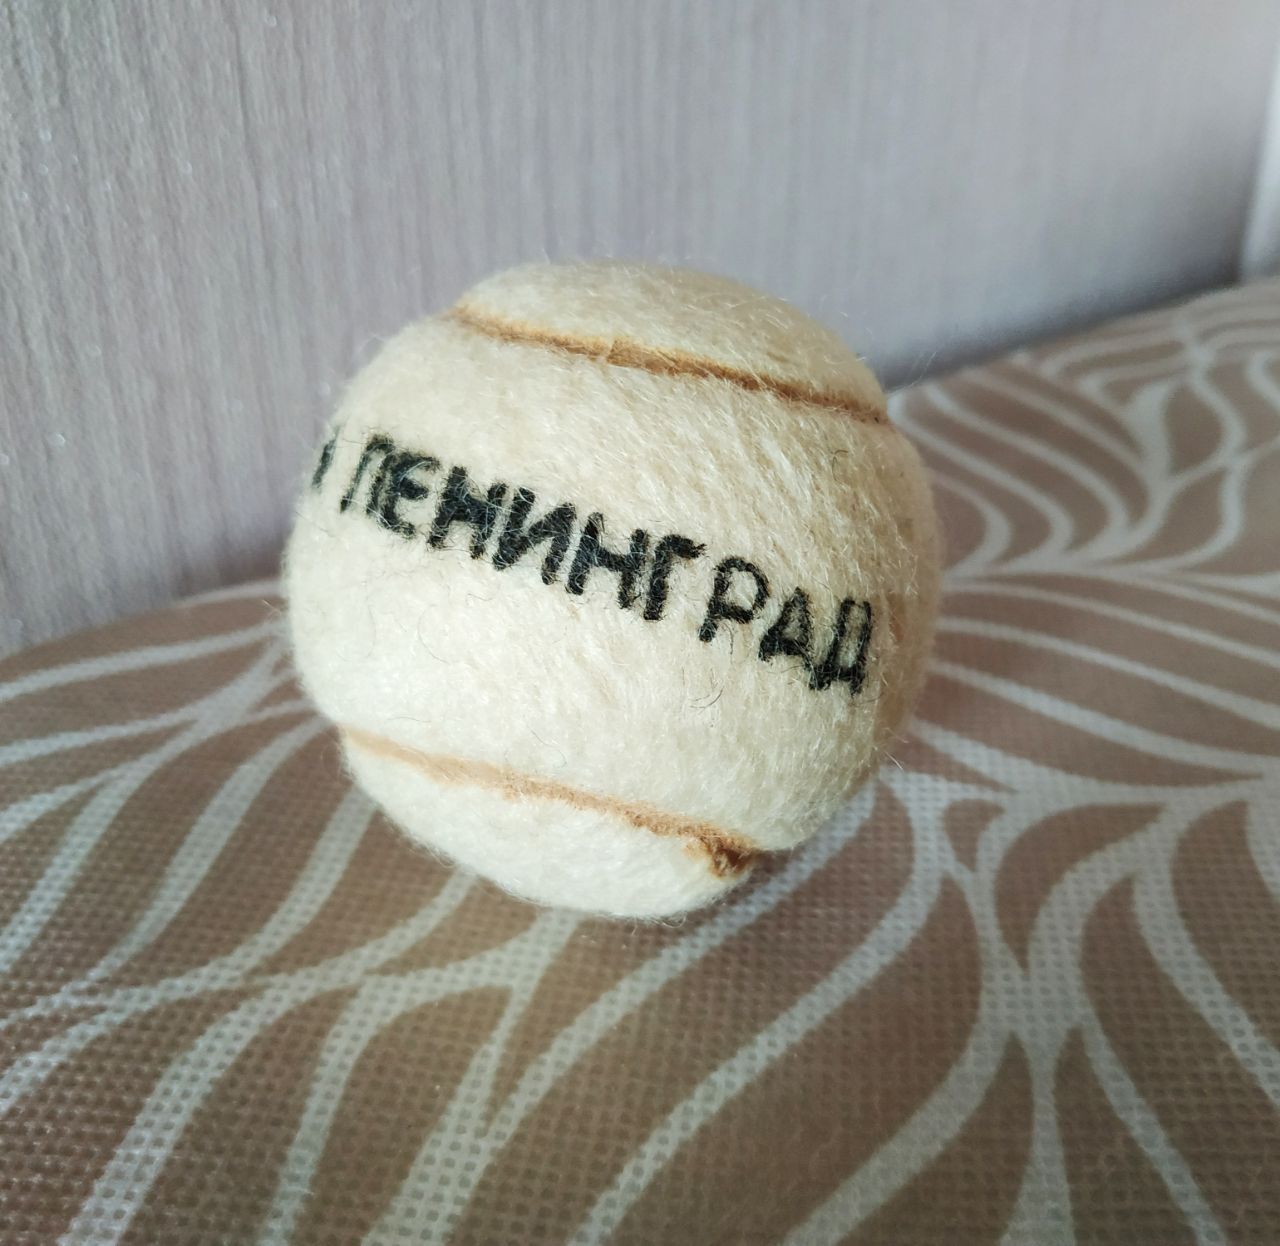 М'яч тенісний ретро вінтаж СРСР мяч теннисный для тенниса винтаж СССР